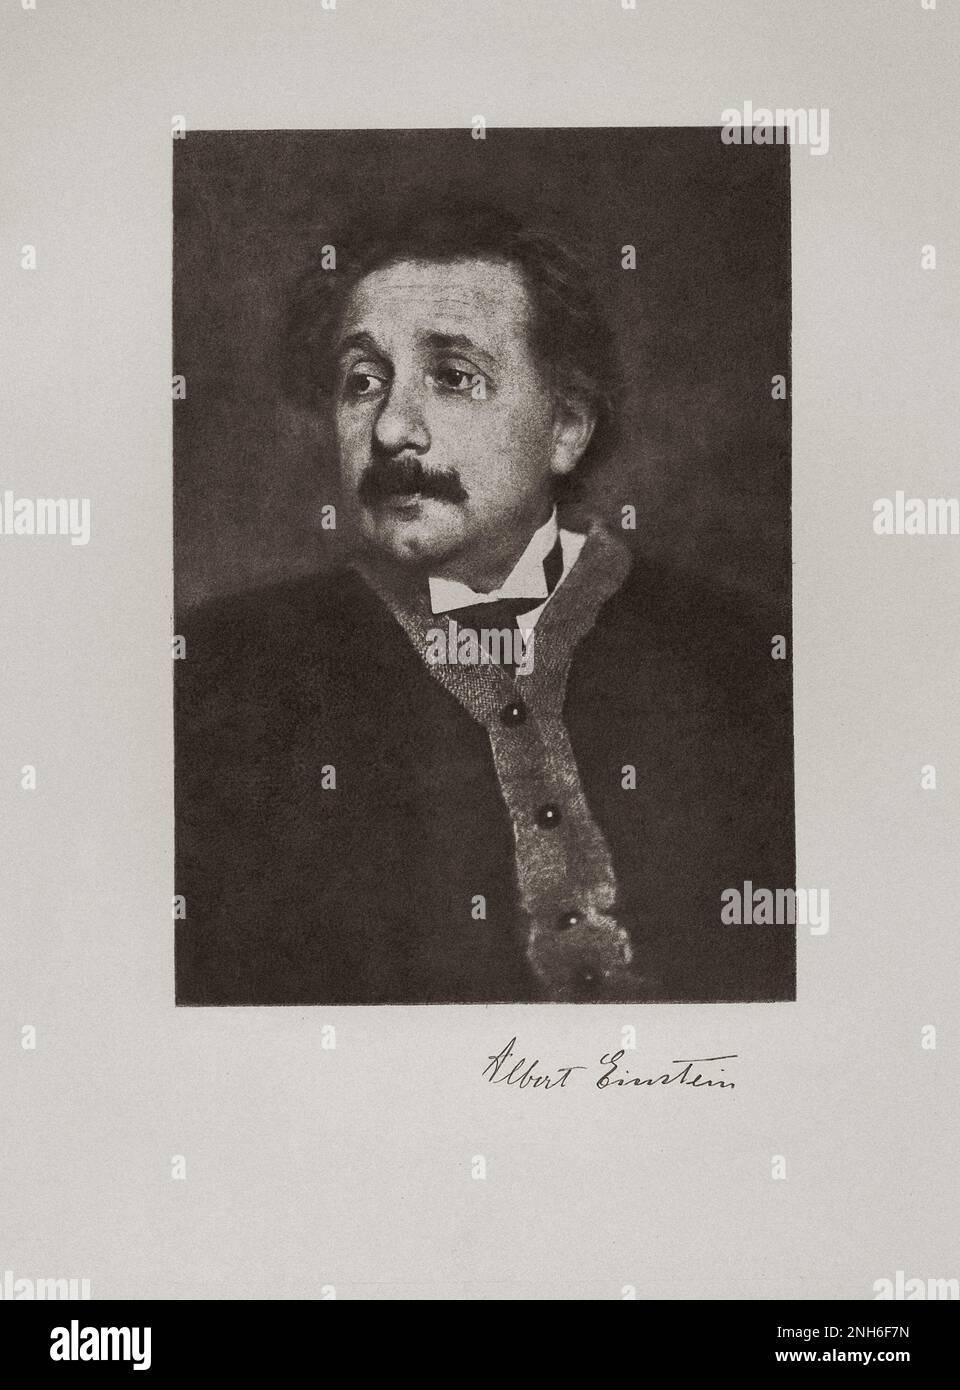 Albert Einstein (1879 – 1955) è stato un fisico teorico tedesco che ha sviluppato la teoria della relatività, uno dei due pilastri della fisica moderna (insieme alla meccanica quantistica). Il suo lavoro è noto anche per la sua influenza sulla filosofia della scienza. È meglio conosciuto al pubblico per la sua formula di equivalenza massa-energia e = mc2, che è stata definita "l'equazione più famosa del mondo". Ha ricevuto il Premio Nobel 1921 in fisica 'per i suoi servizi alla fisica teorica, e soprattutto per la sua scoperta della legge dell'effetto fotoelettrico', un passo fondamentale nello sviluppo di quan Foto Stock